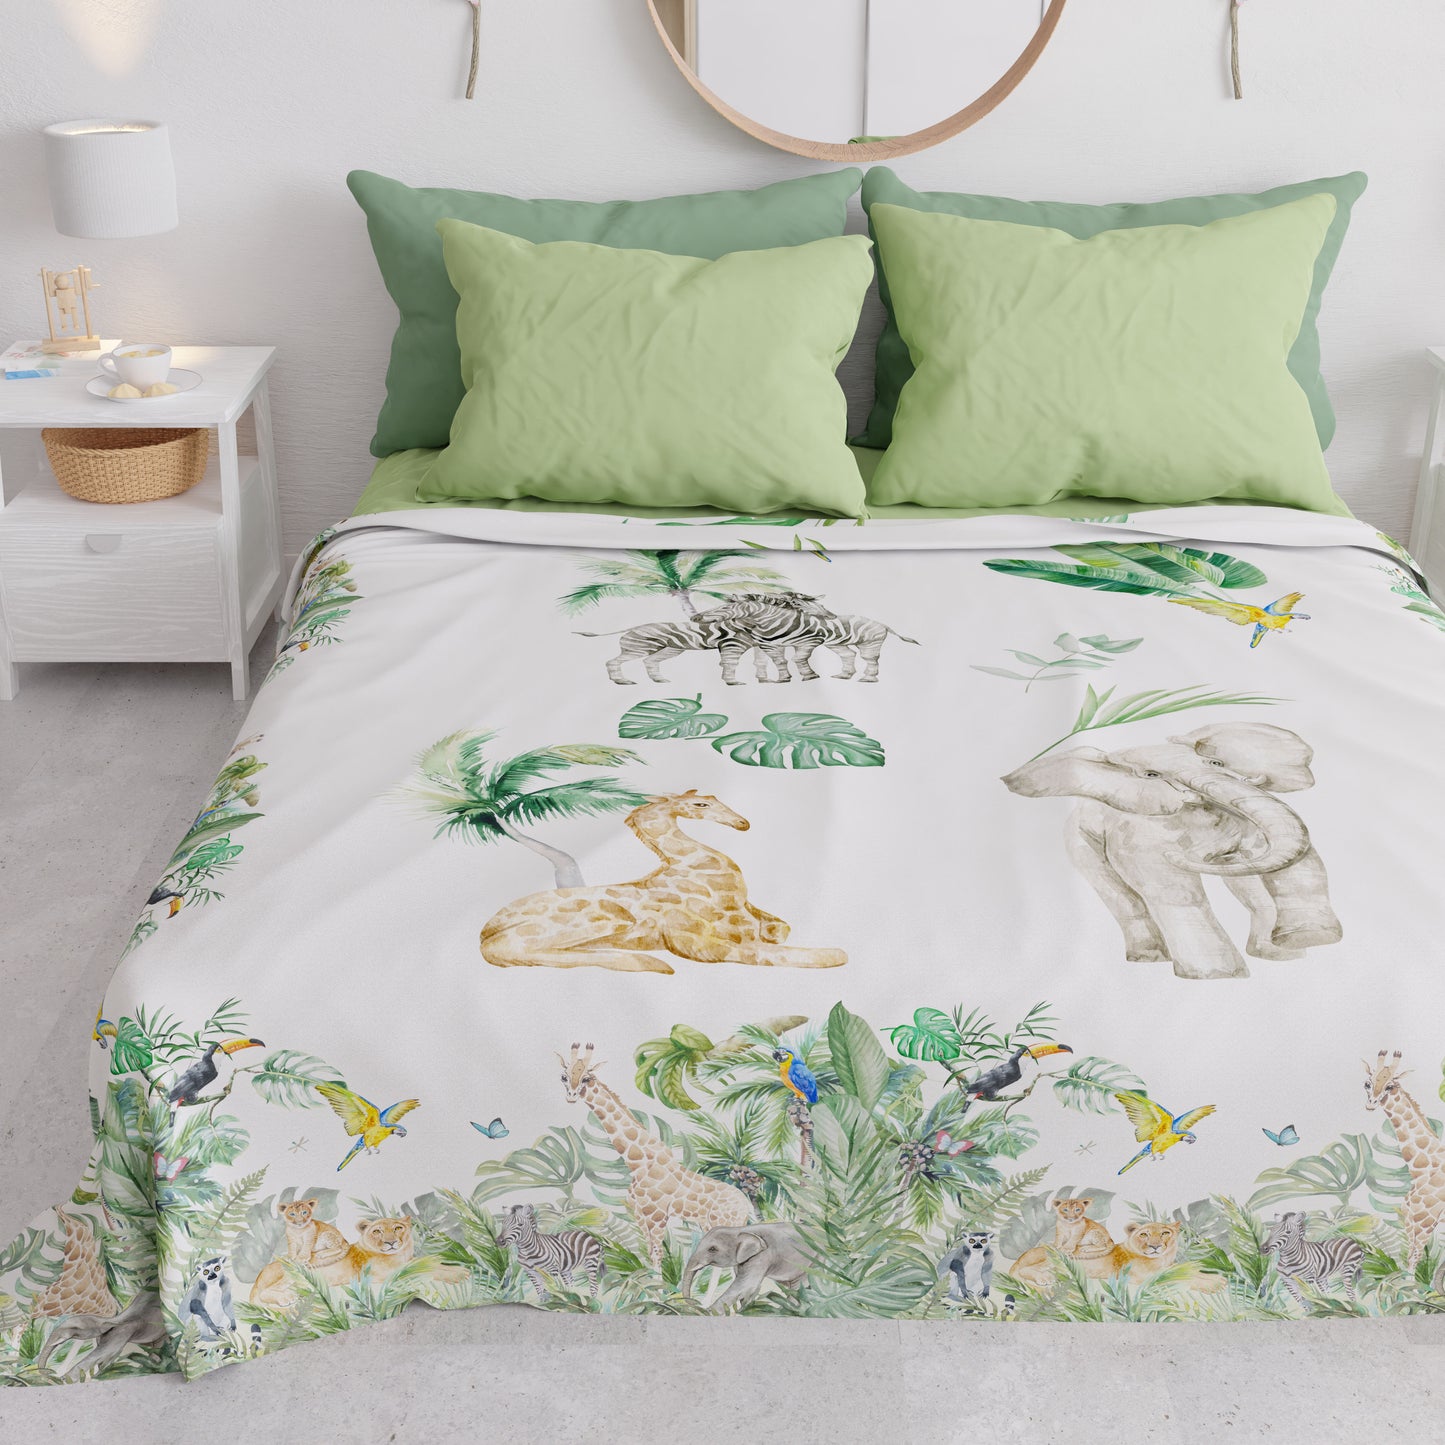 Couvre-lit d'été, couverture légère, couvre-lit en draps, Jungle